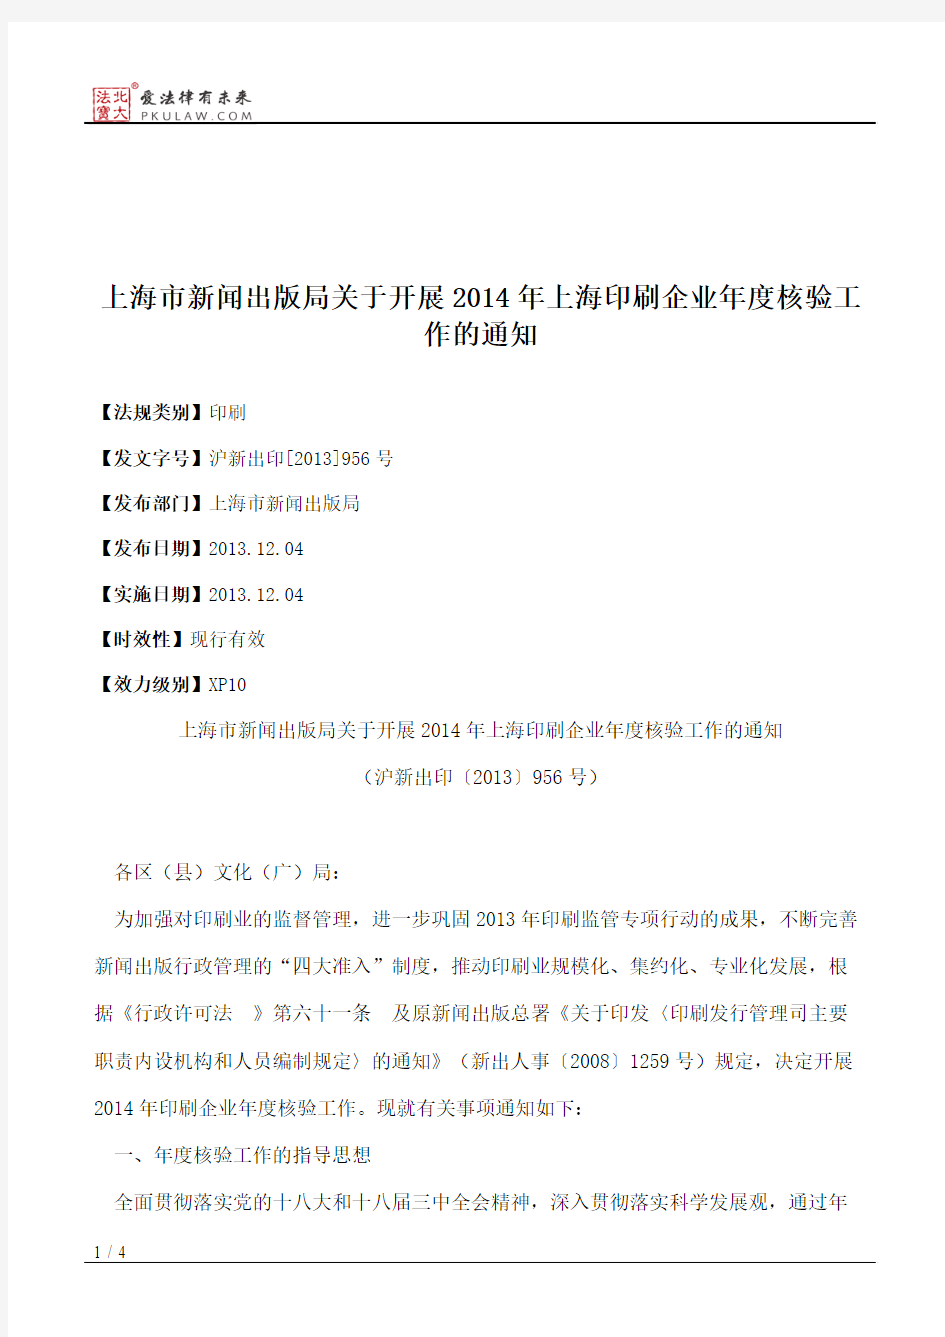 上海市新闻出版局关于开展2014年上海印刷企业年度核验工作的通知